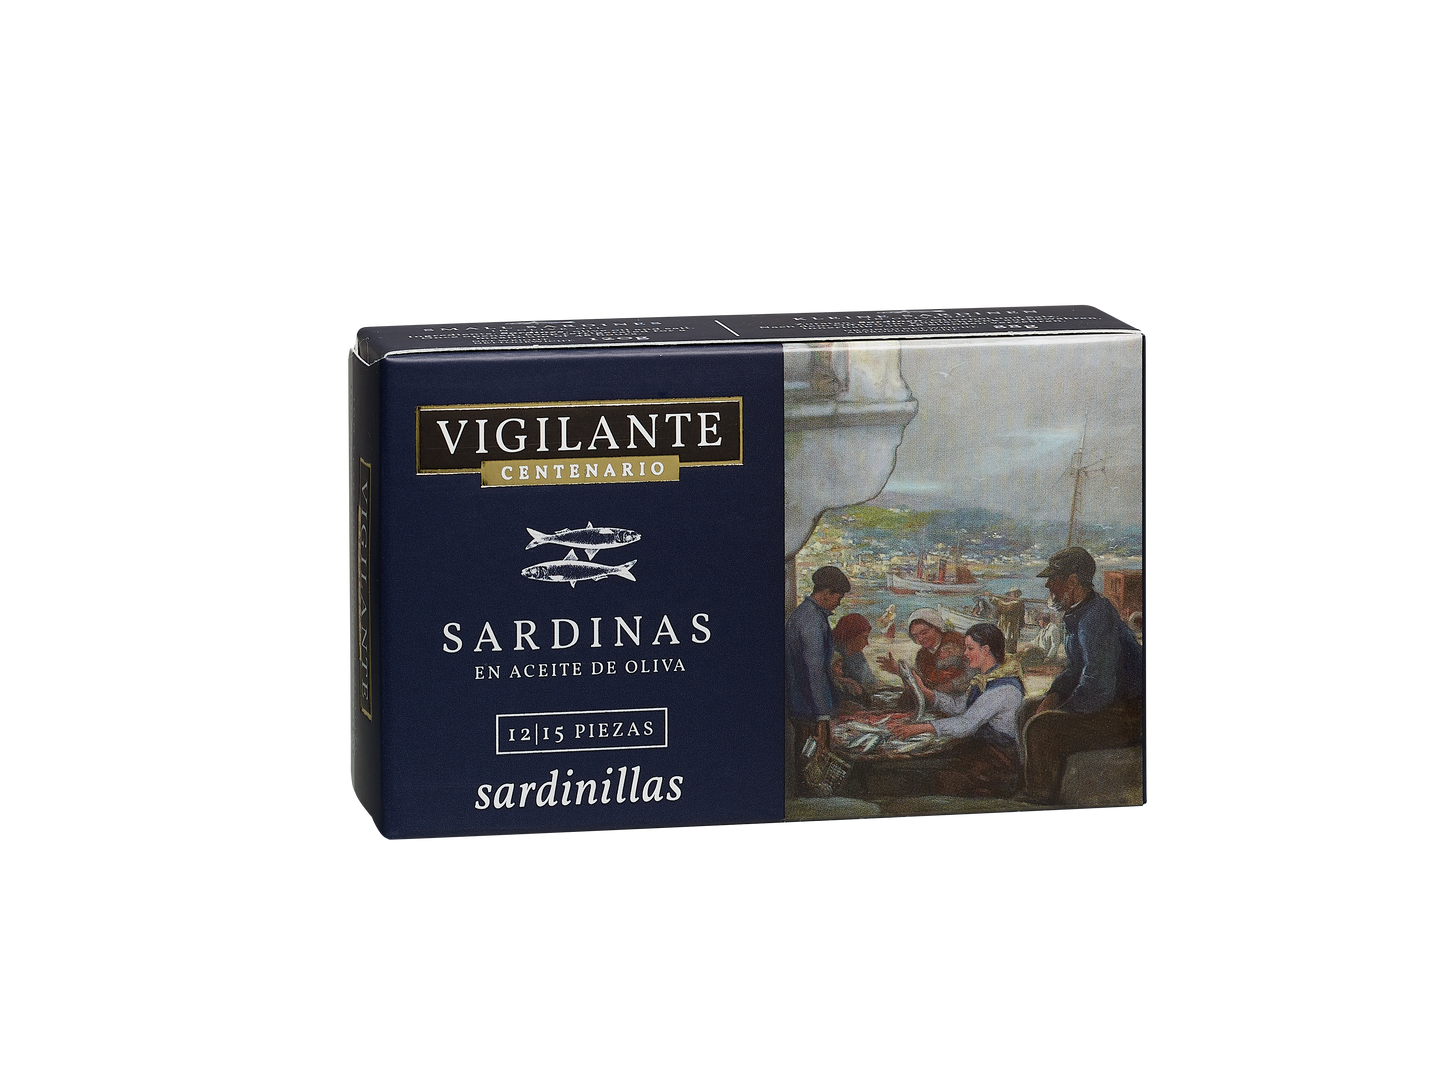 Vigilante Centenario Sardinas Sardinillas en Aceite de Oliva 120g